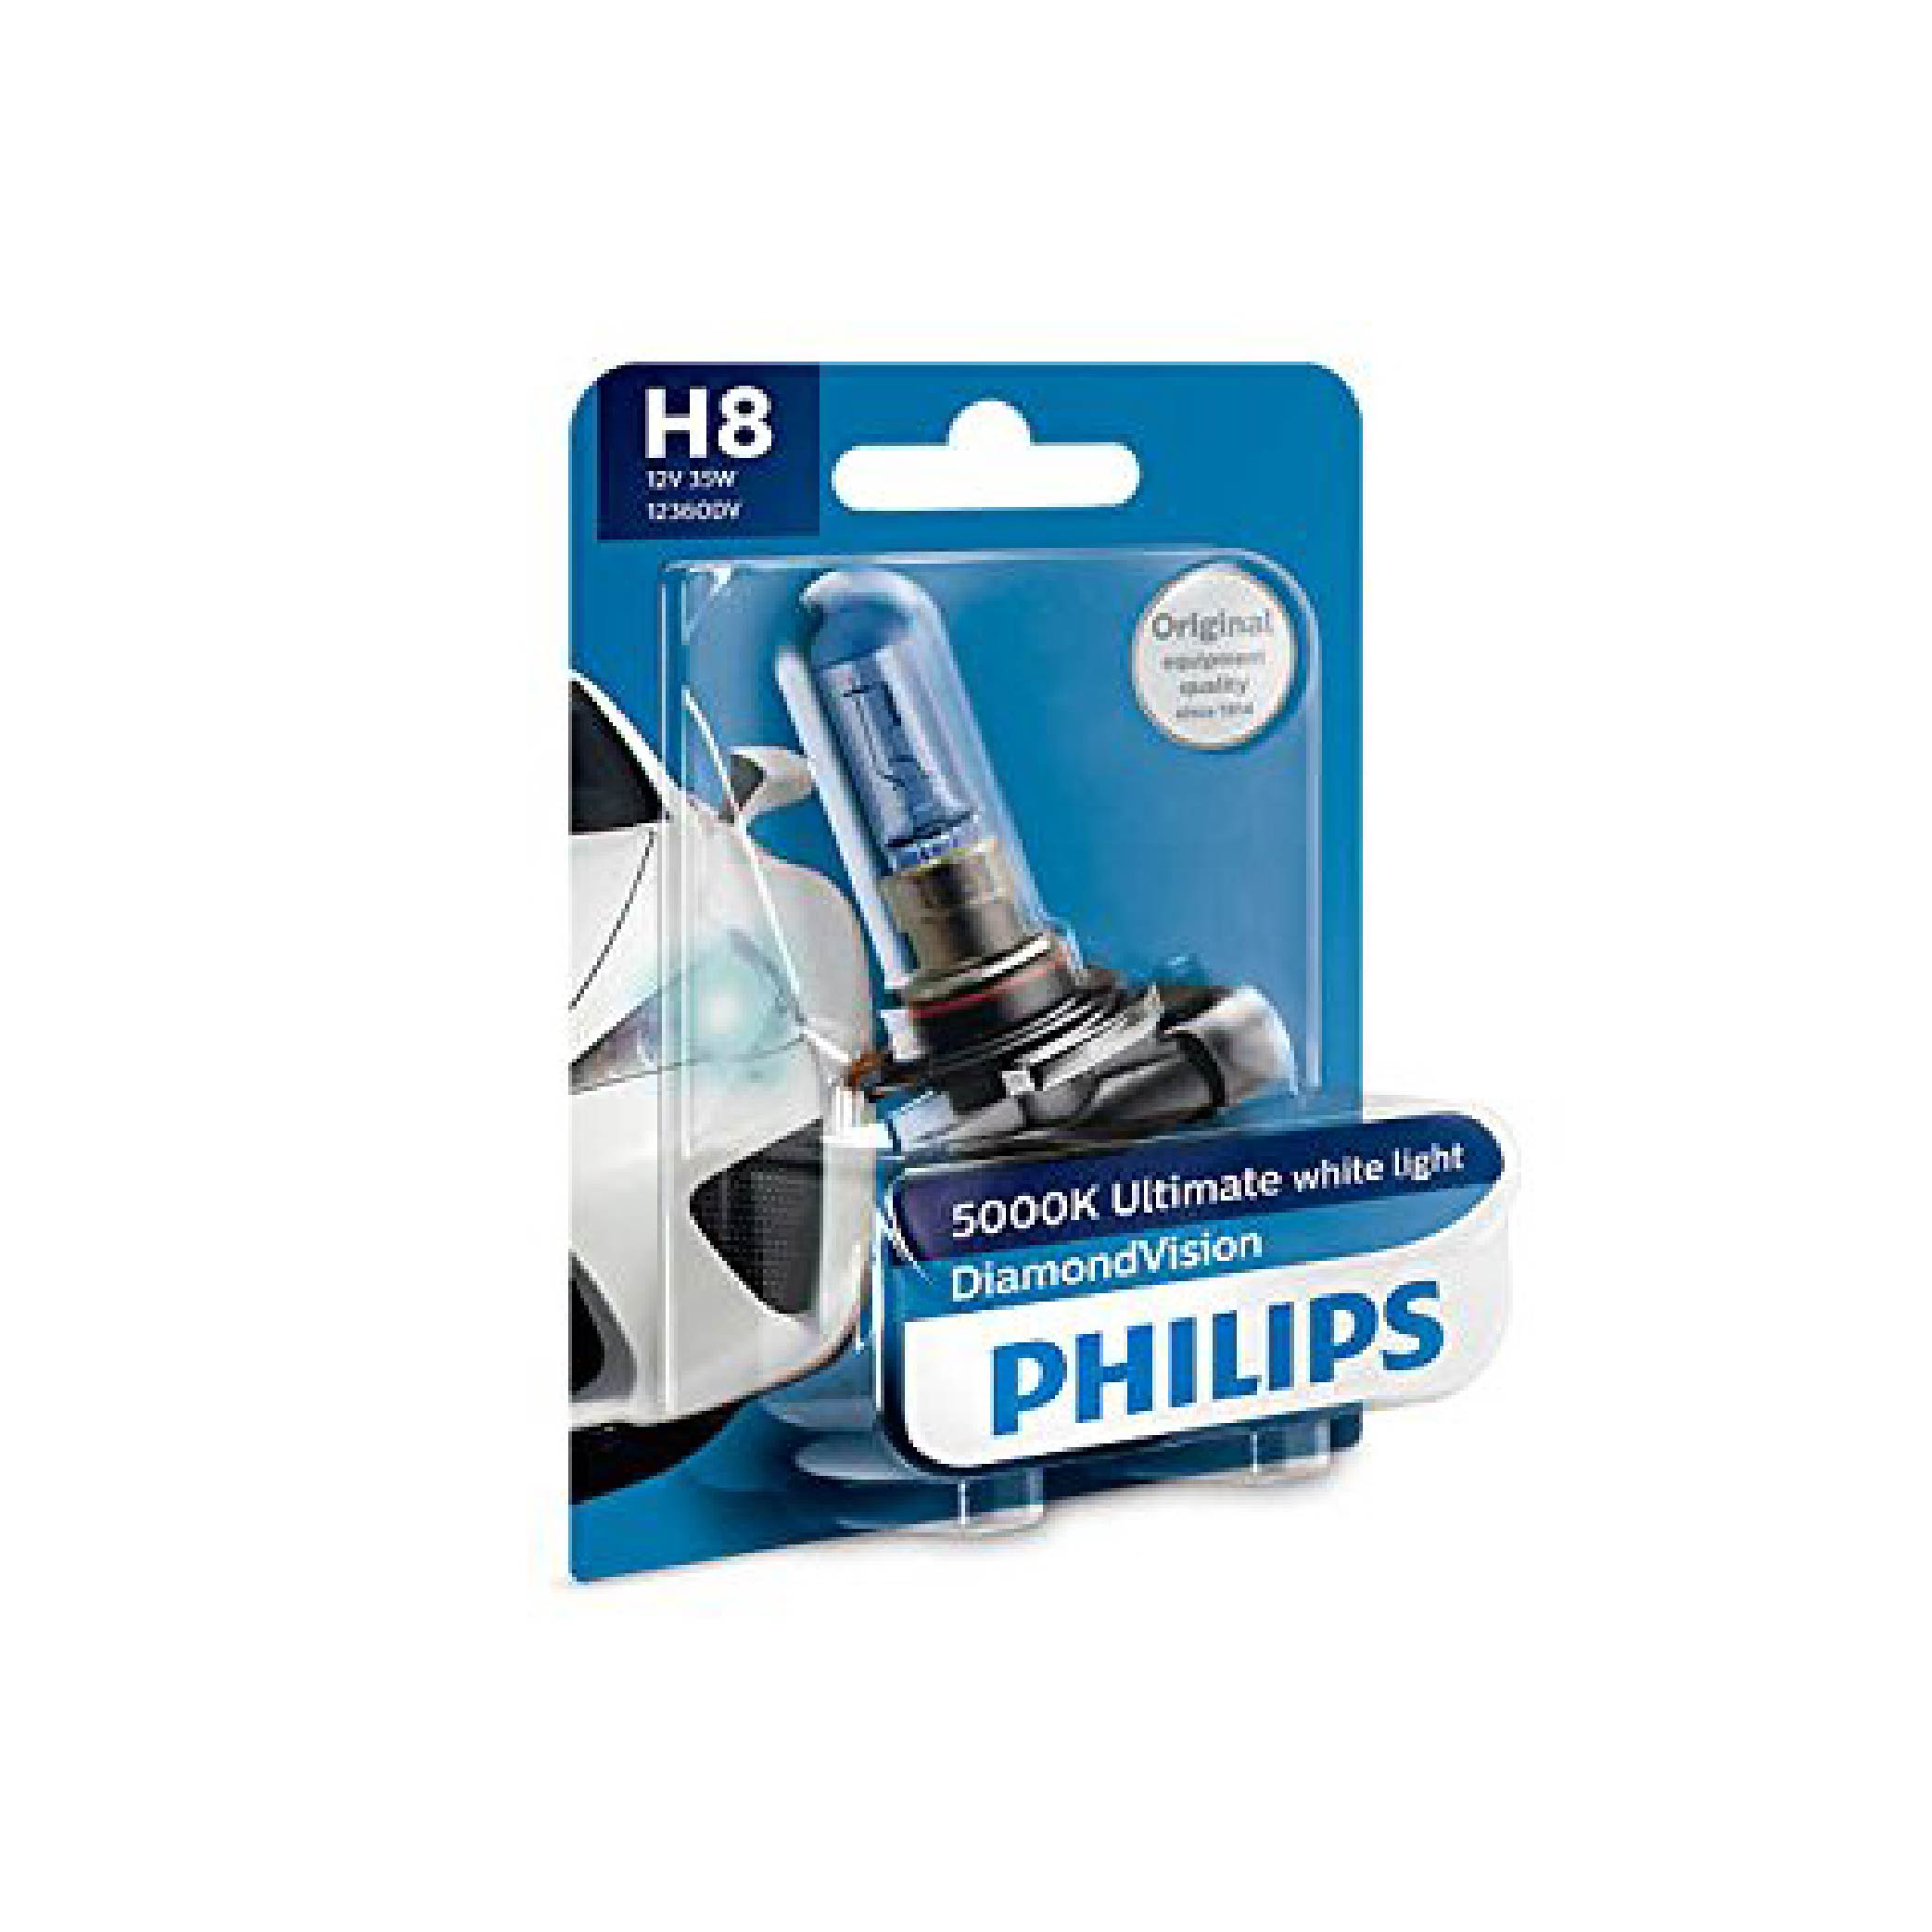 Philips H8 12360 Premium Halogen Foglight Bulb 12v 35w